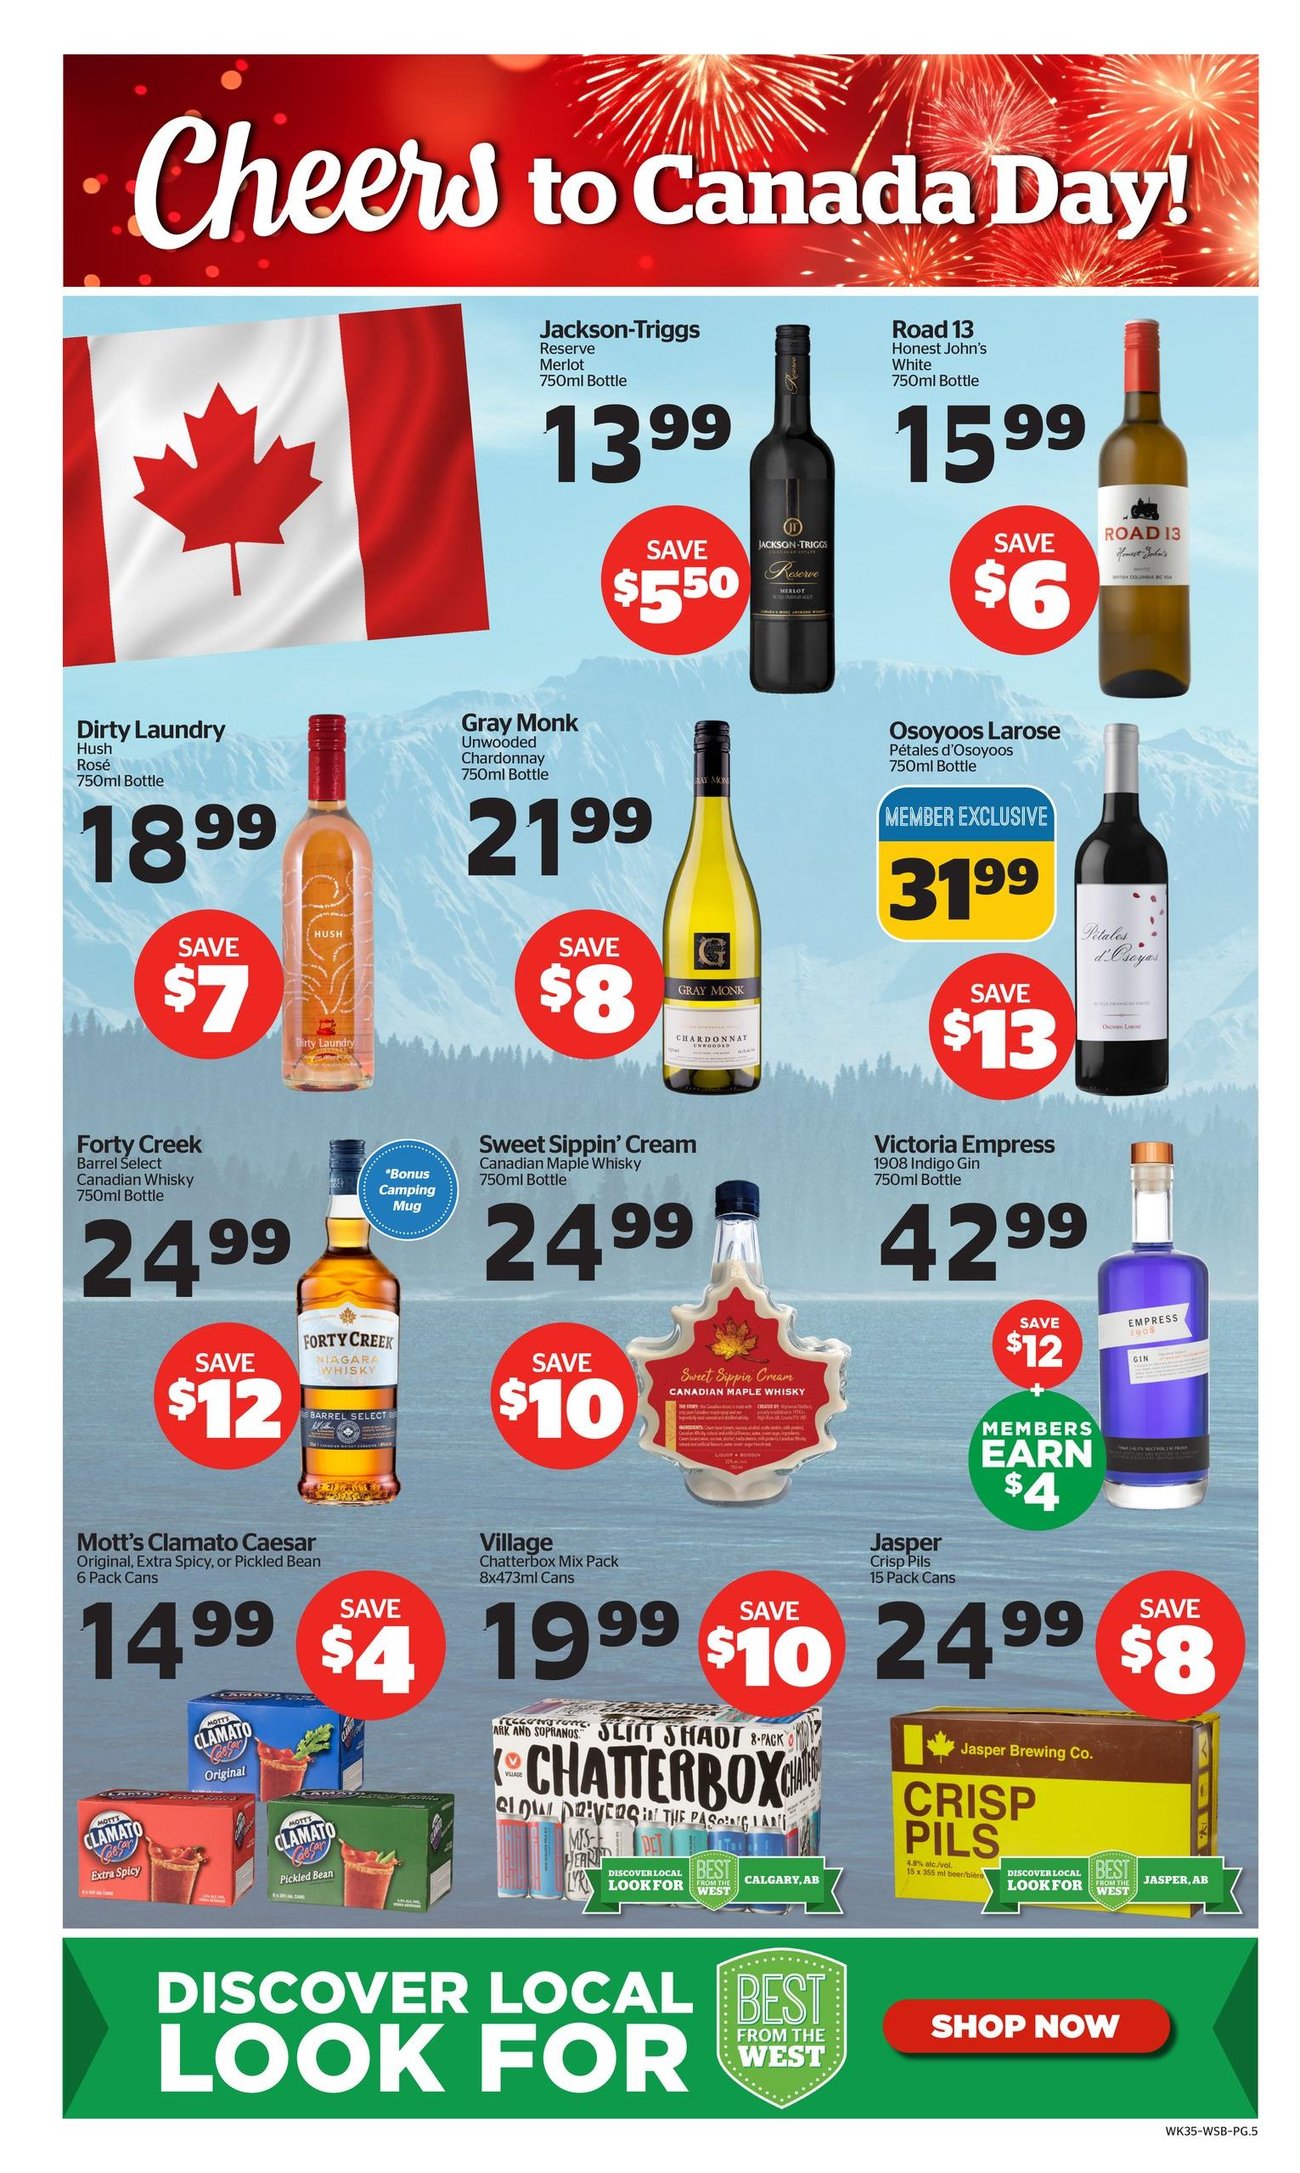 Calgary Co-op - Wine Spirits Beer - Page 5